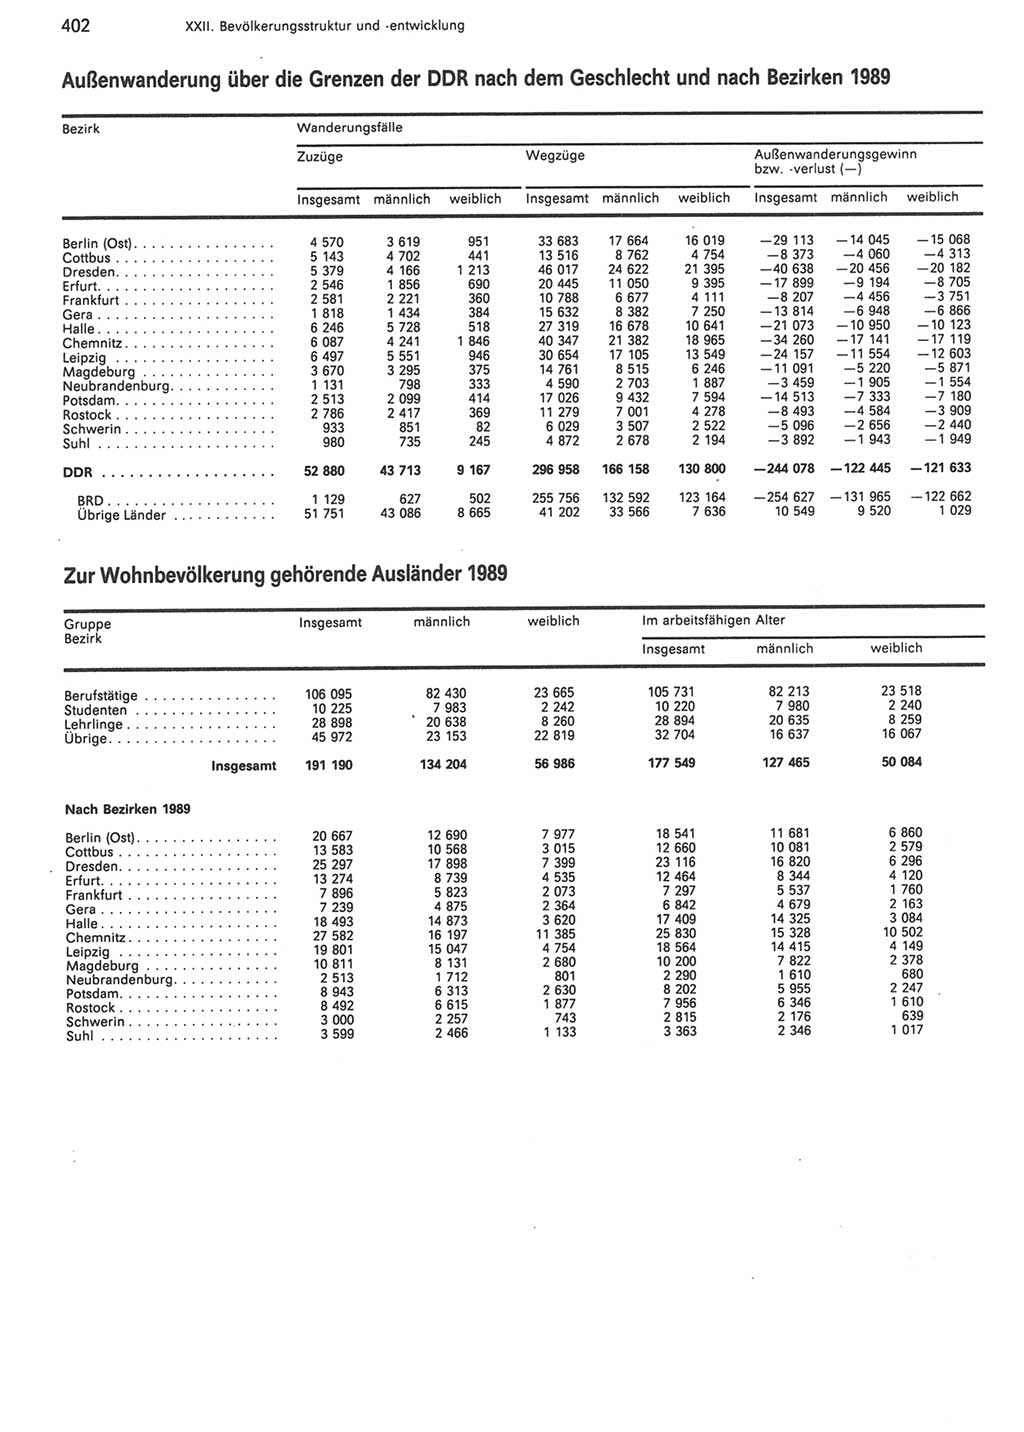 Statistisches Jahrbuch der Deutschen Demokratischen Republik (DDR) 1990, Seite 402 (Stat. Jb. DDR 1990, S. 402)